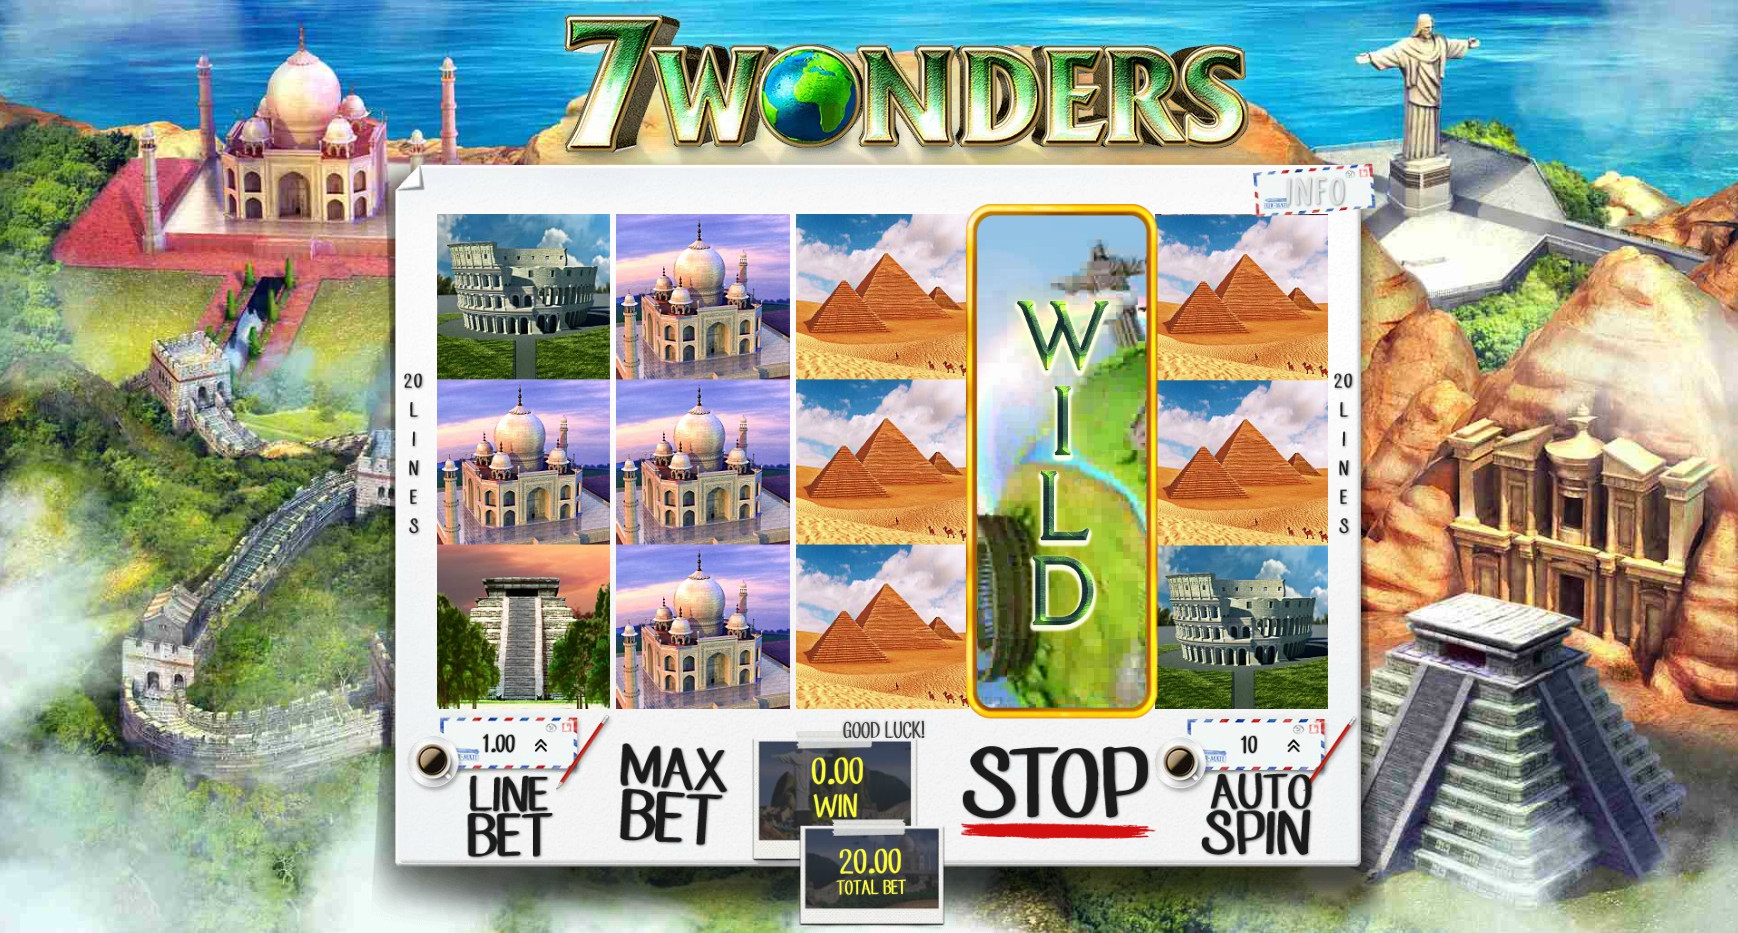 7 wonders slot